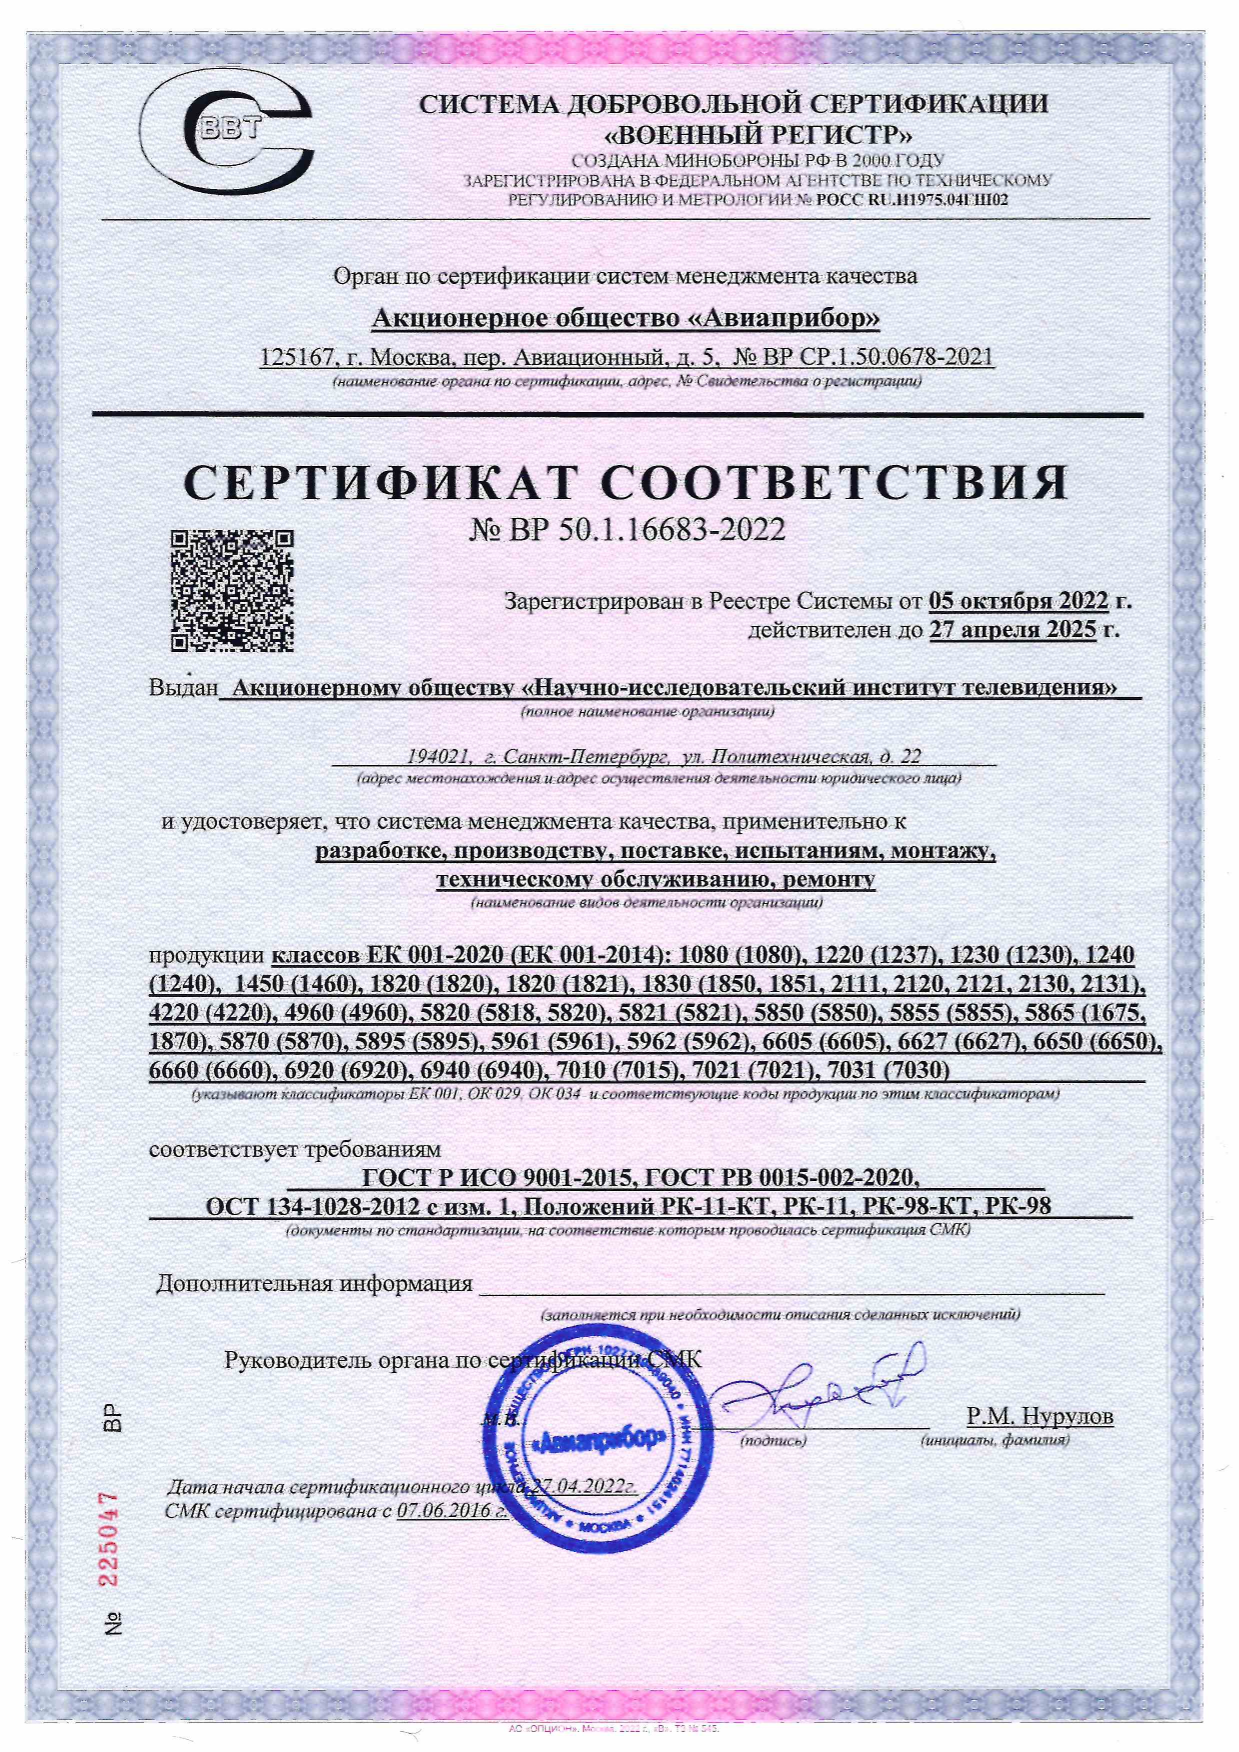 Сертификат соответствия от 05.10.2022 № ВР 50.1.16683-2022